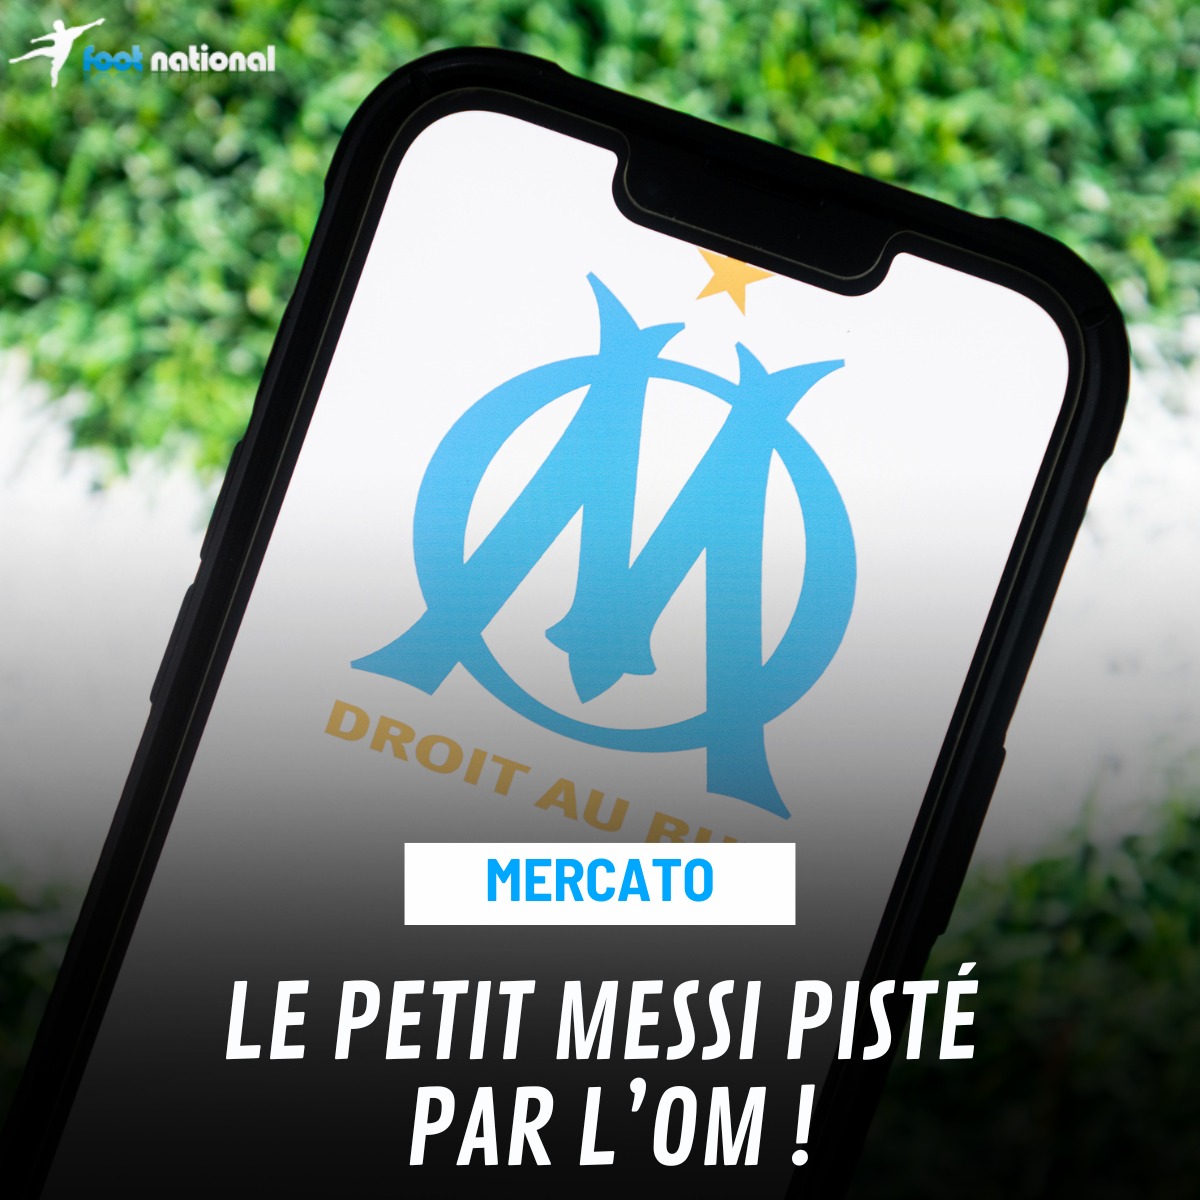 L’OM souhaiterait s’offrir un très gros coup sur le marché des transferts en attirant Messi ! 😱🔥 #MercatOM #TeamOM Plus d’infos 👉 urlz.fr/qAT9